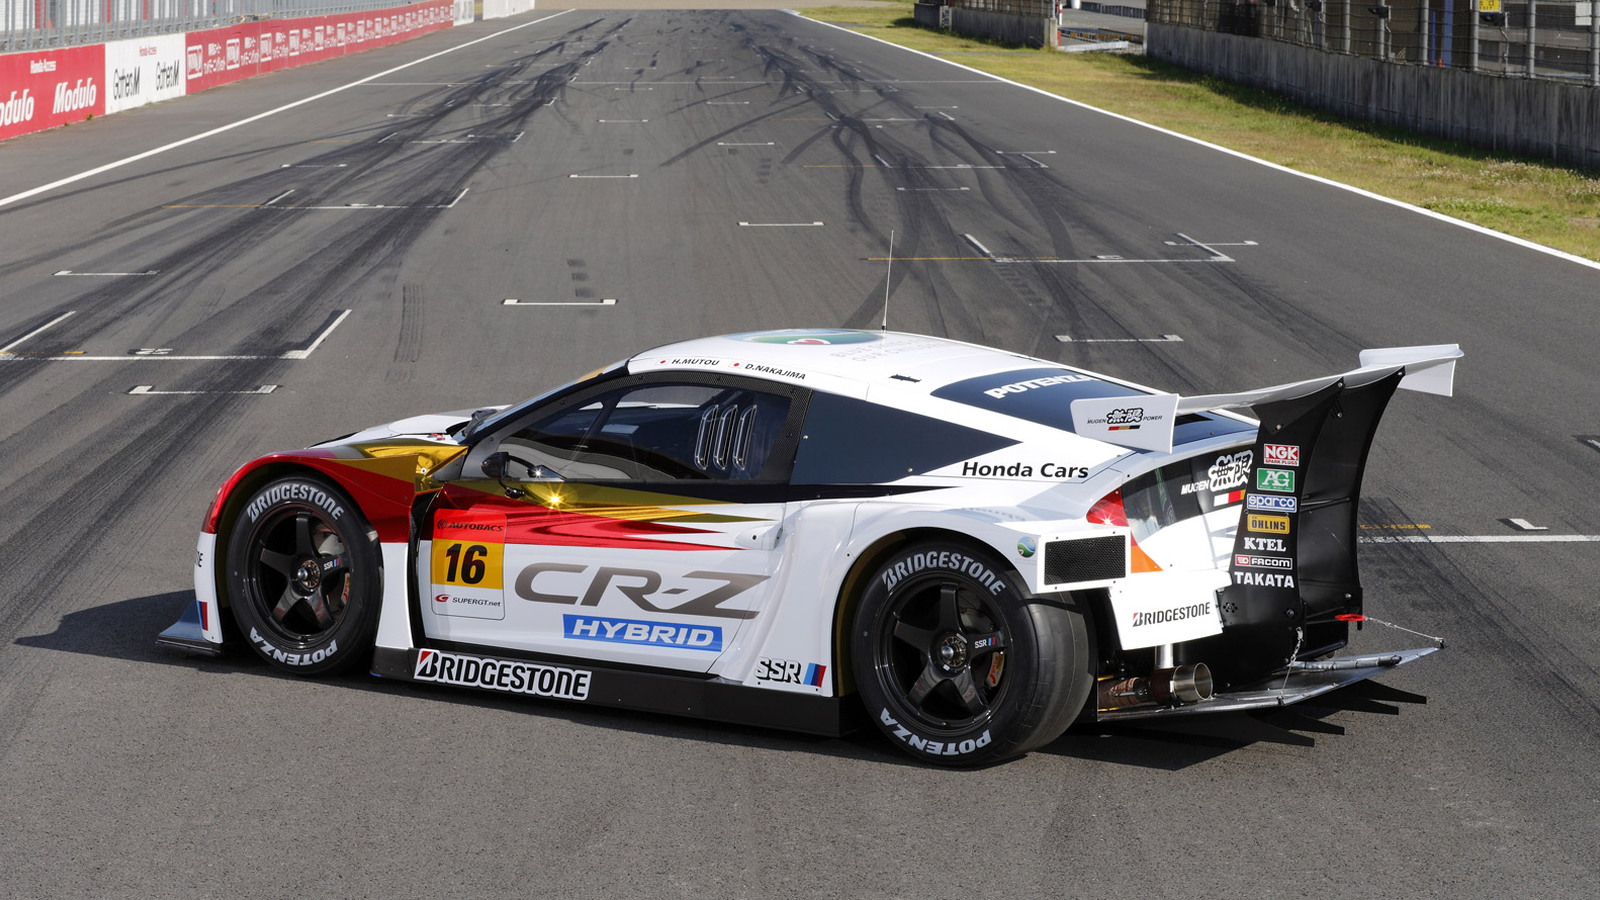 2012 Mugen CR-Z GT Super GT race car